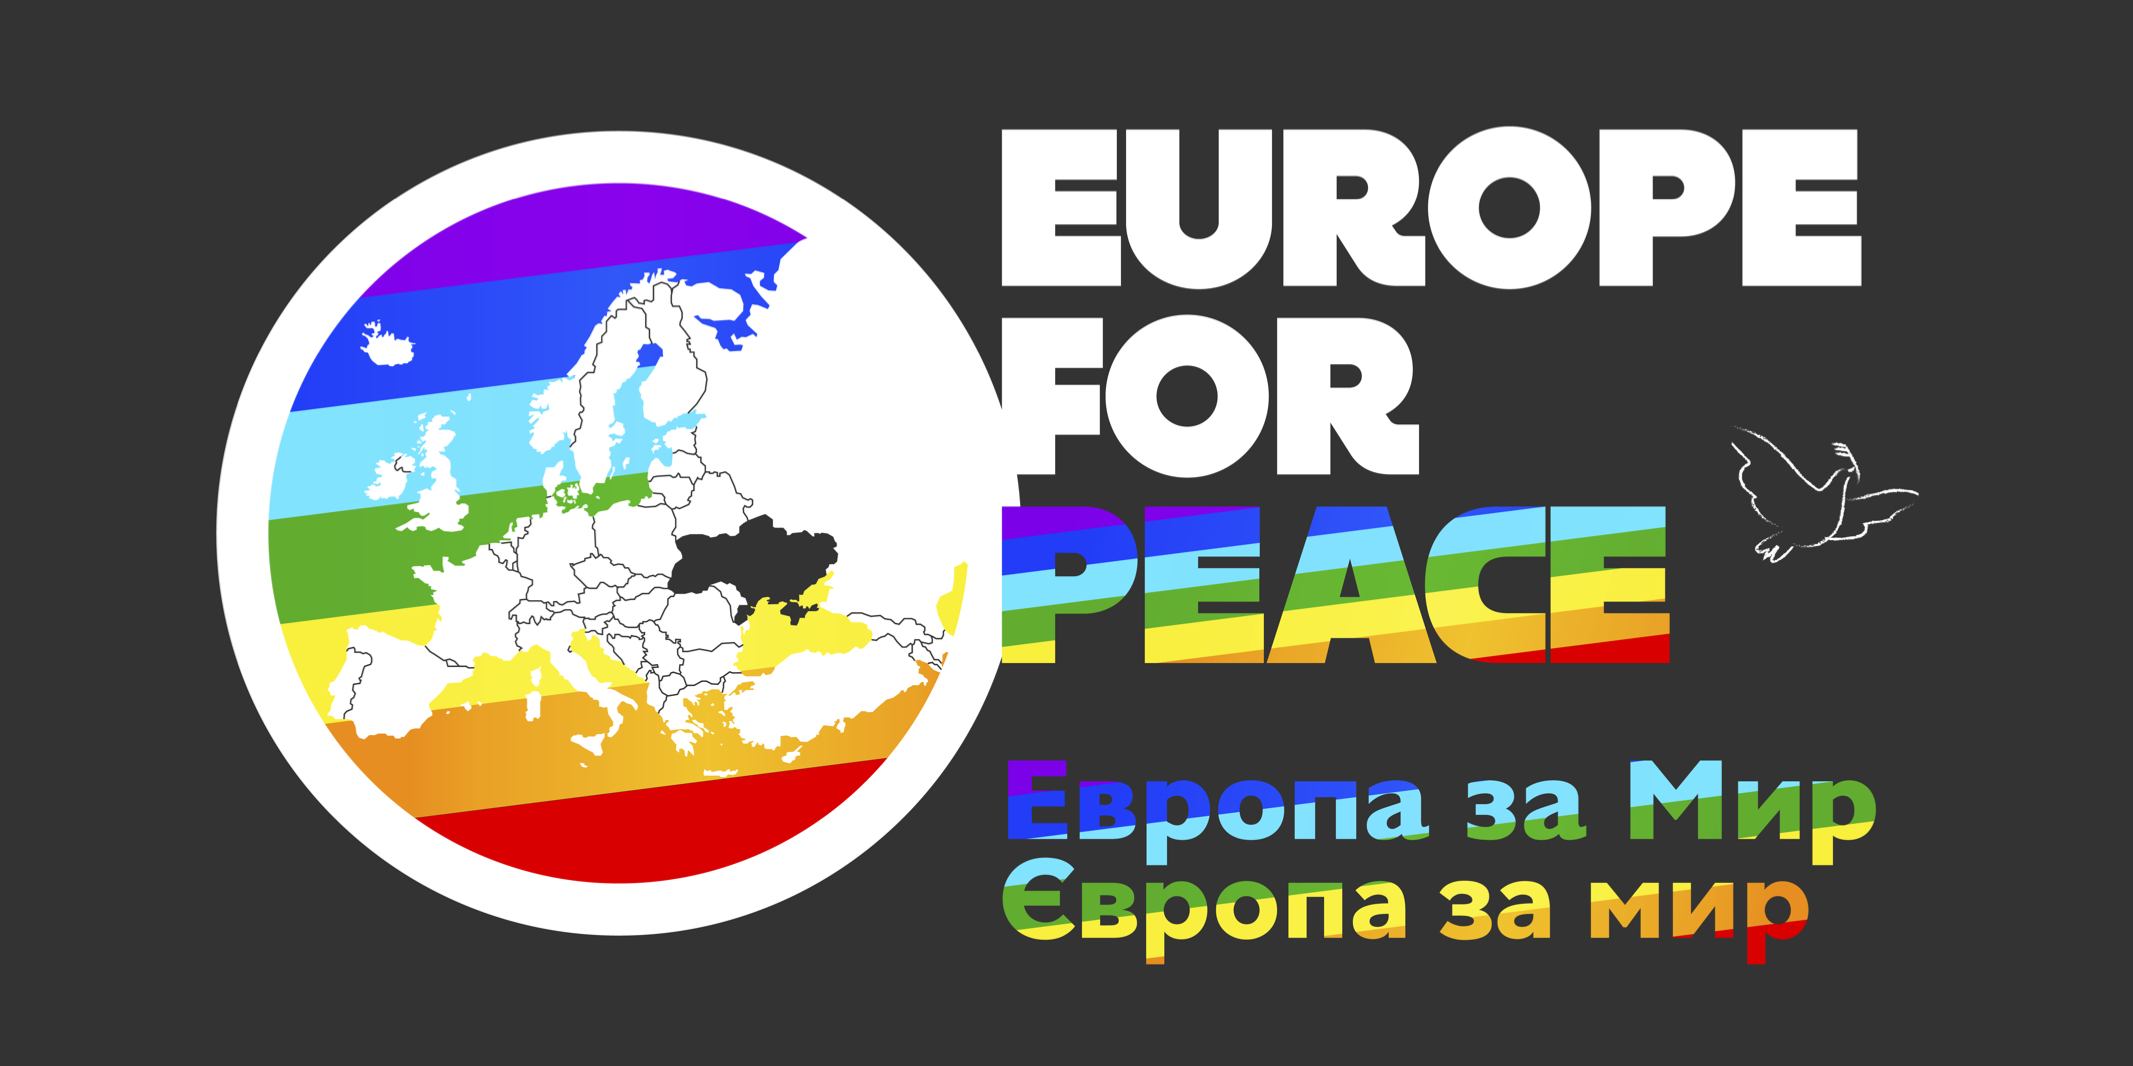 Sottoscrizione per “Europe for Peace”